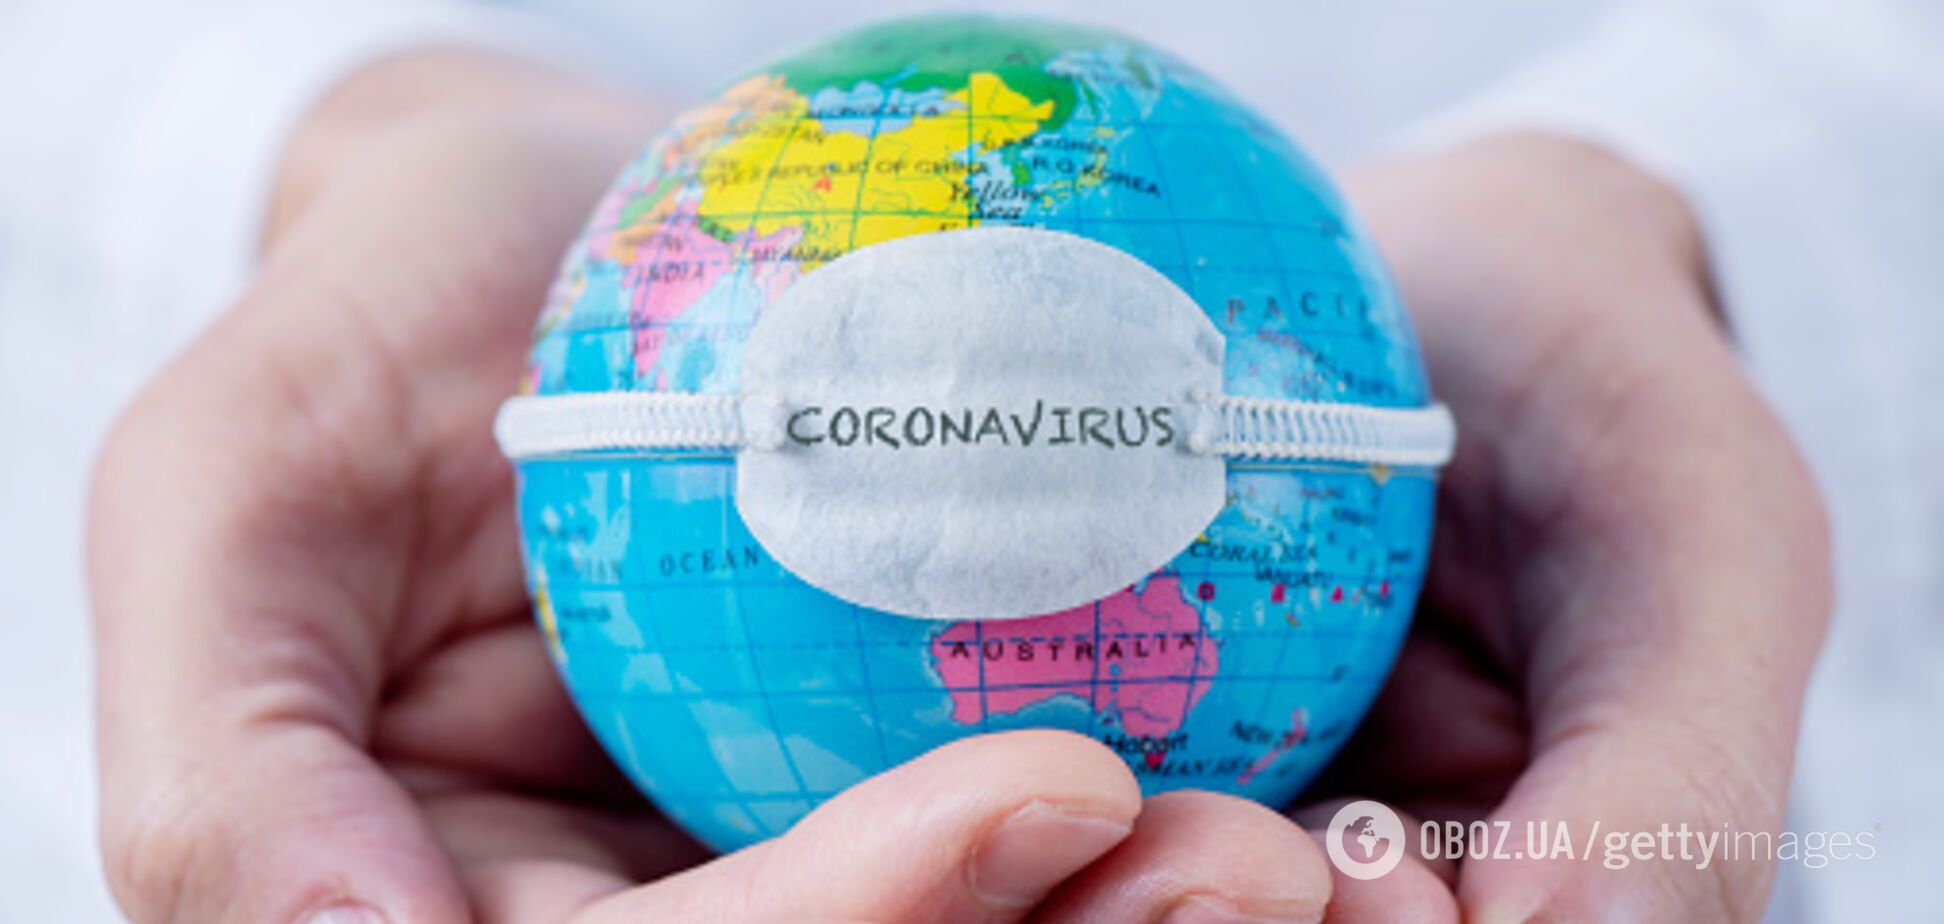 Более 120 тыс. заразились за сутки: статистика по коронавирусу на 4 июня. Постоянно обновляется